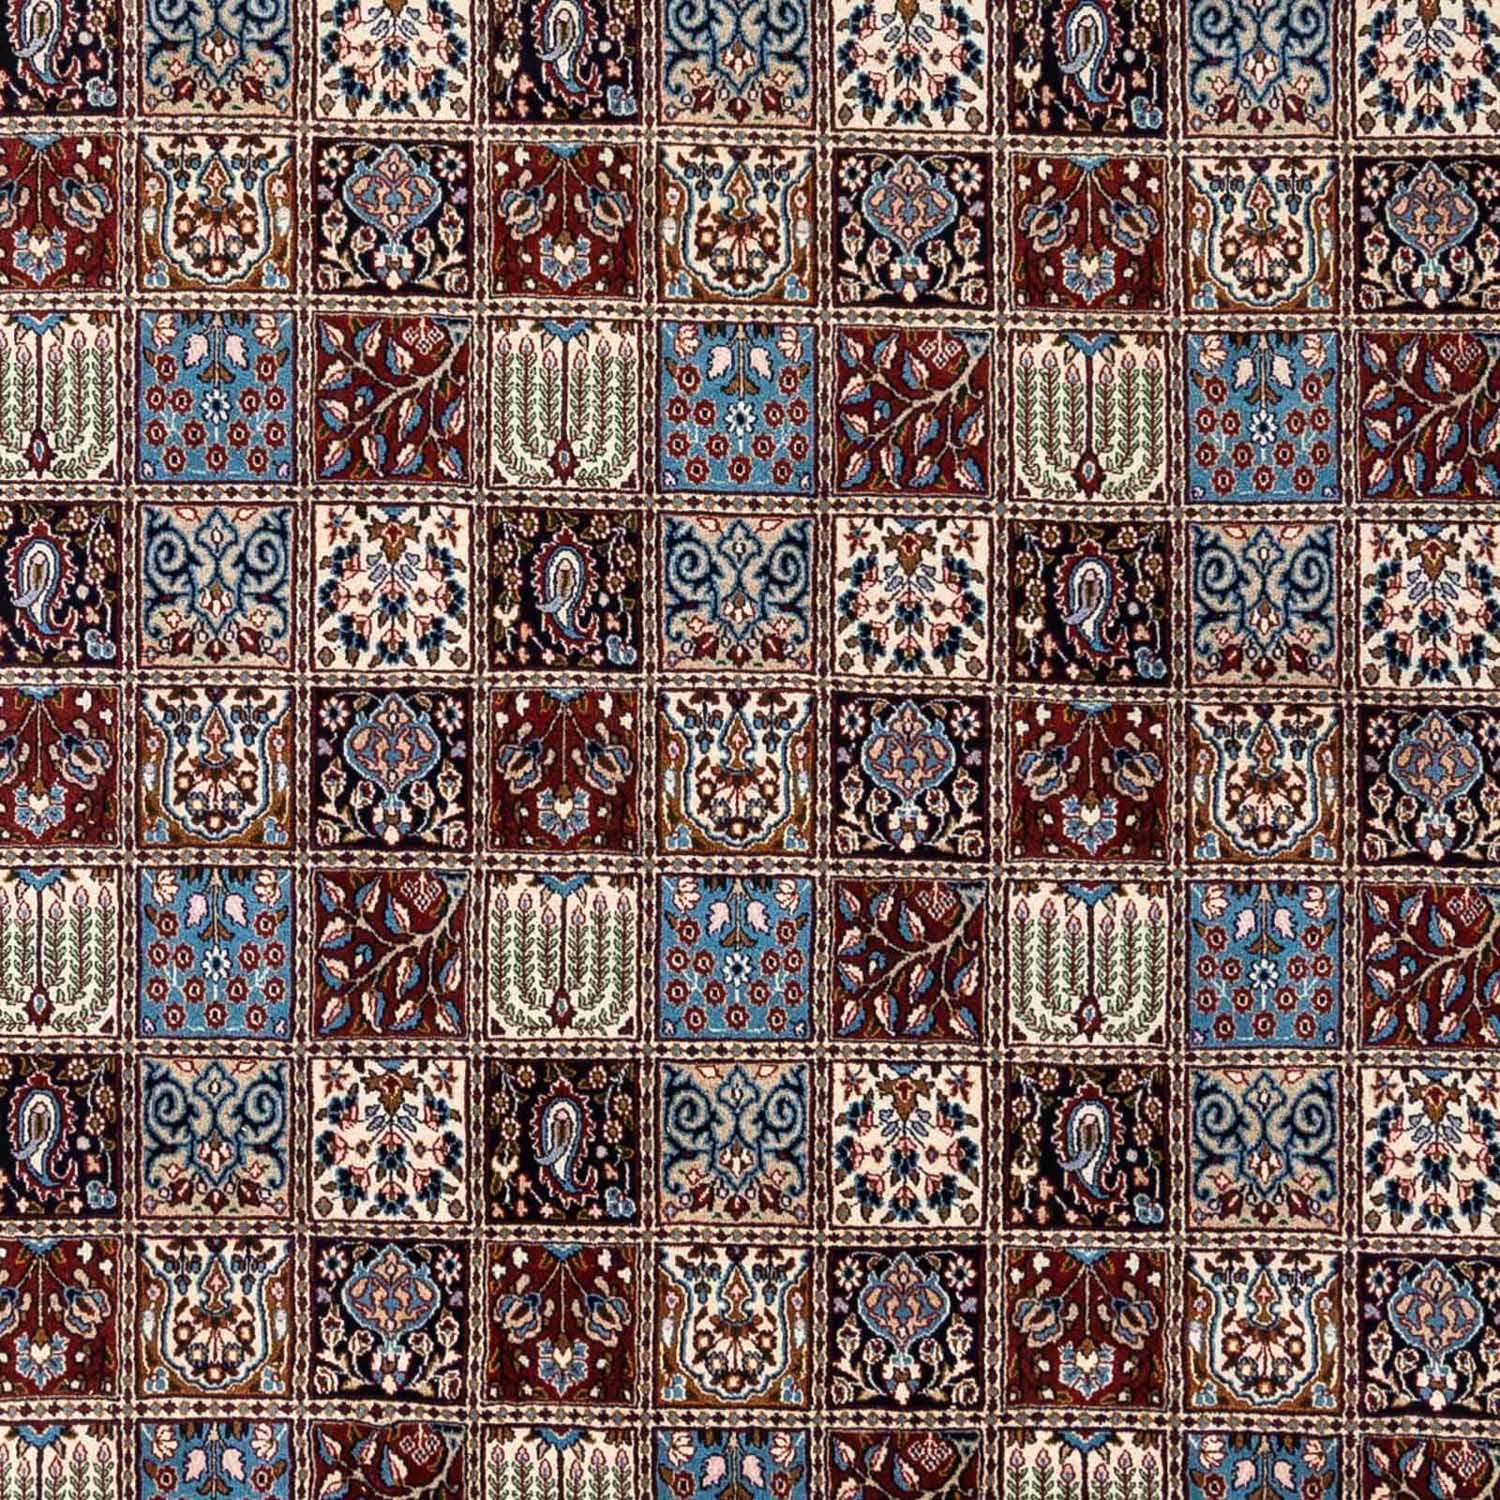 Tapis persan - Classique - 358 x 256 cm - bleu clair